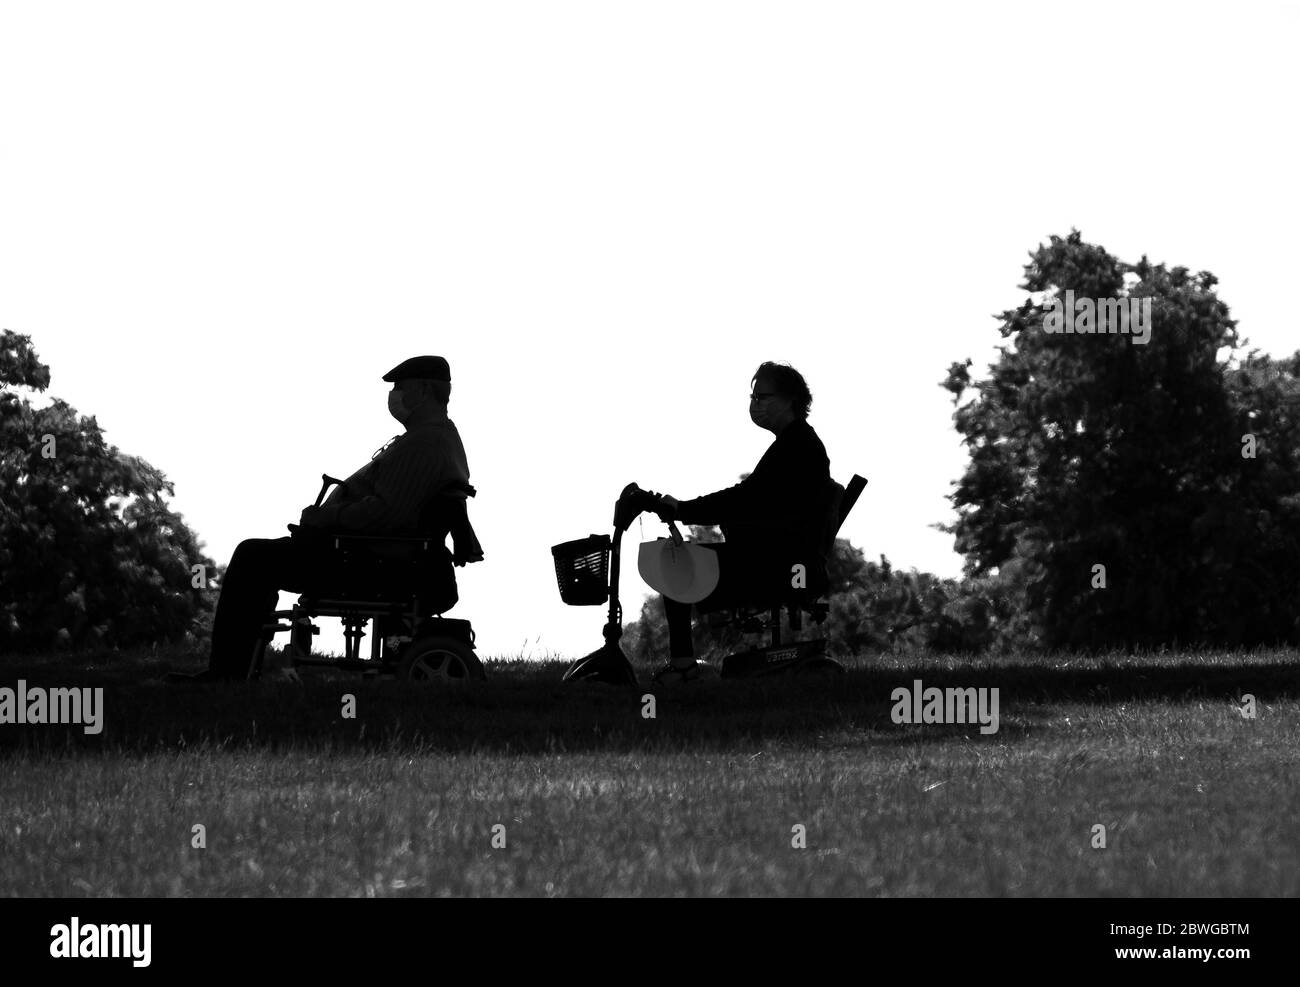 Deux personnes âgées sur des scooters de mobilité observant des distances sociales Banque D'Images